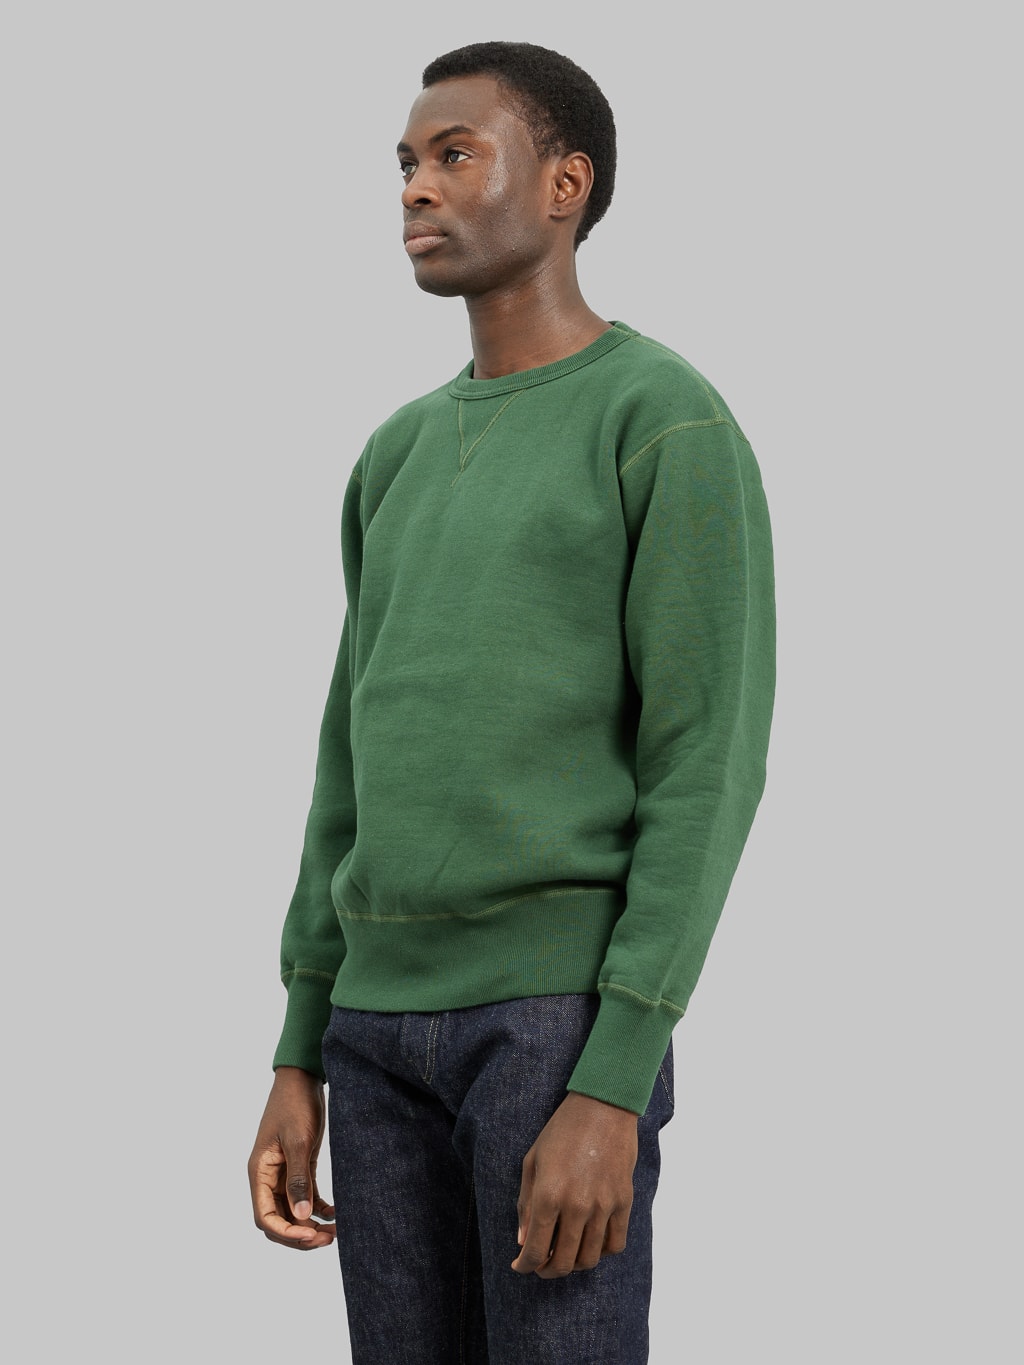 The Strike Gold Loopwheeled Sweatshirt Green model side fit